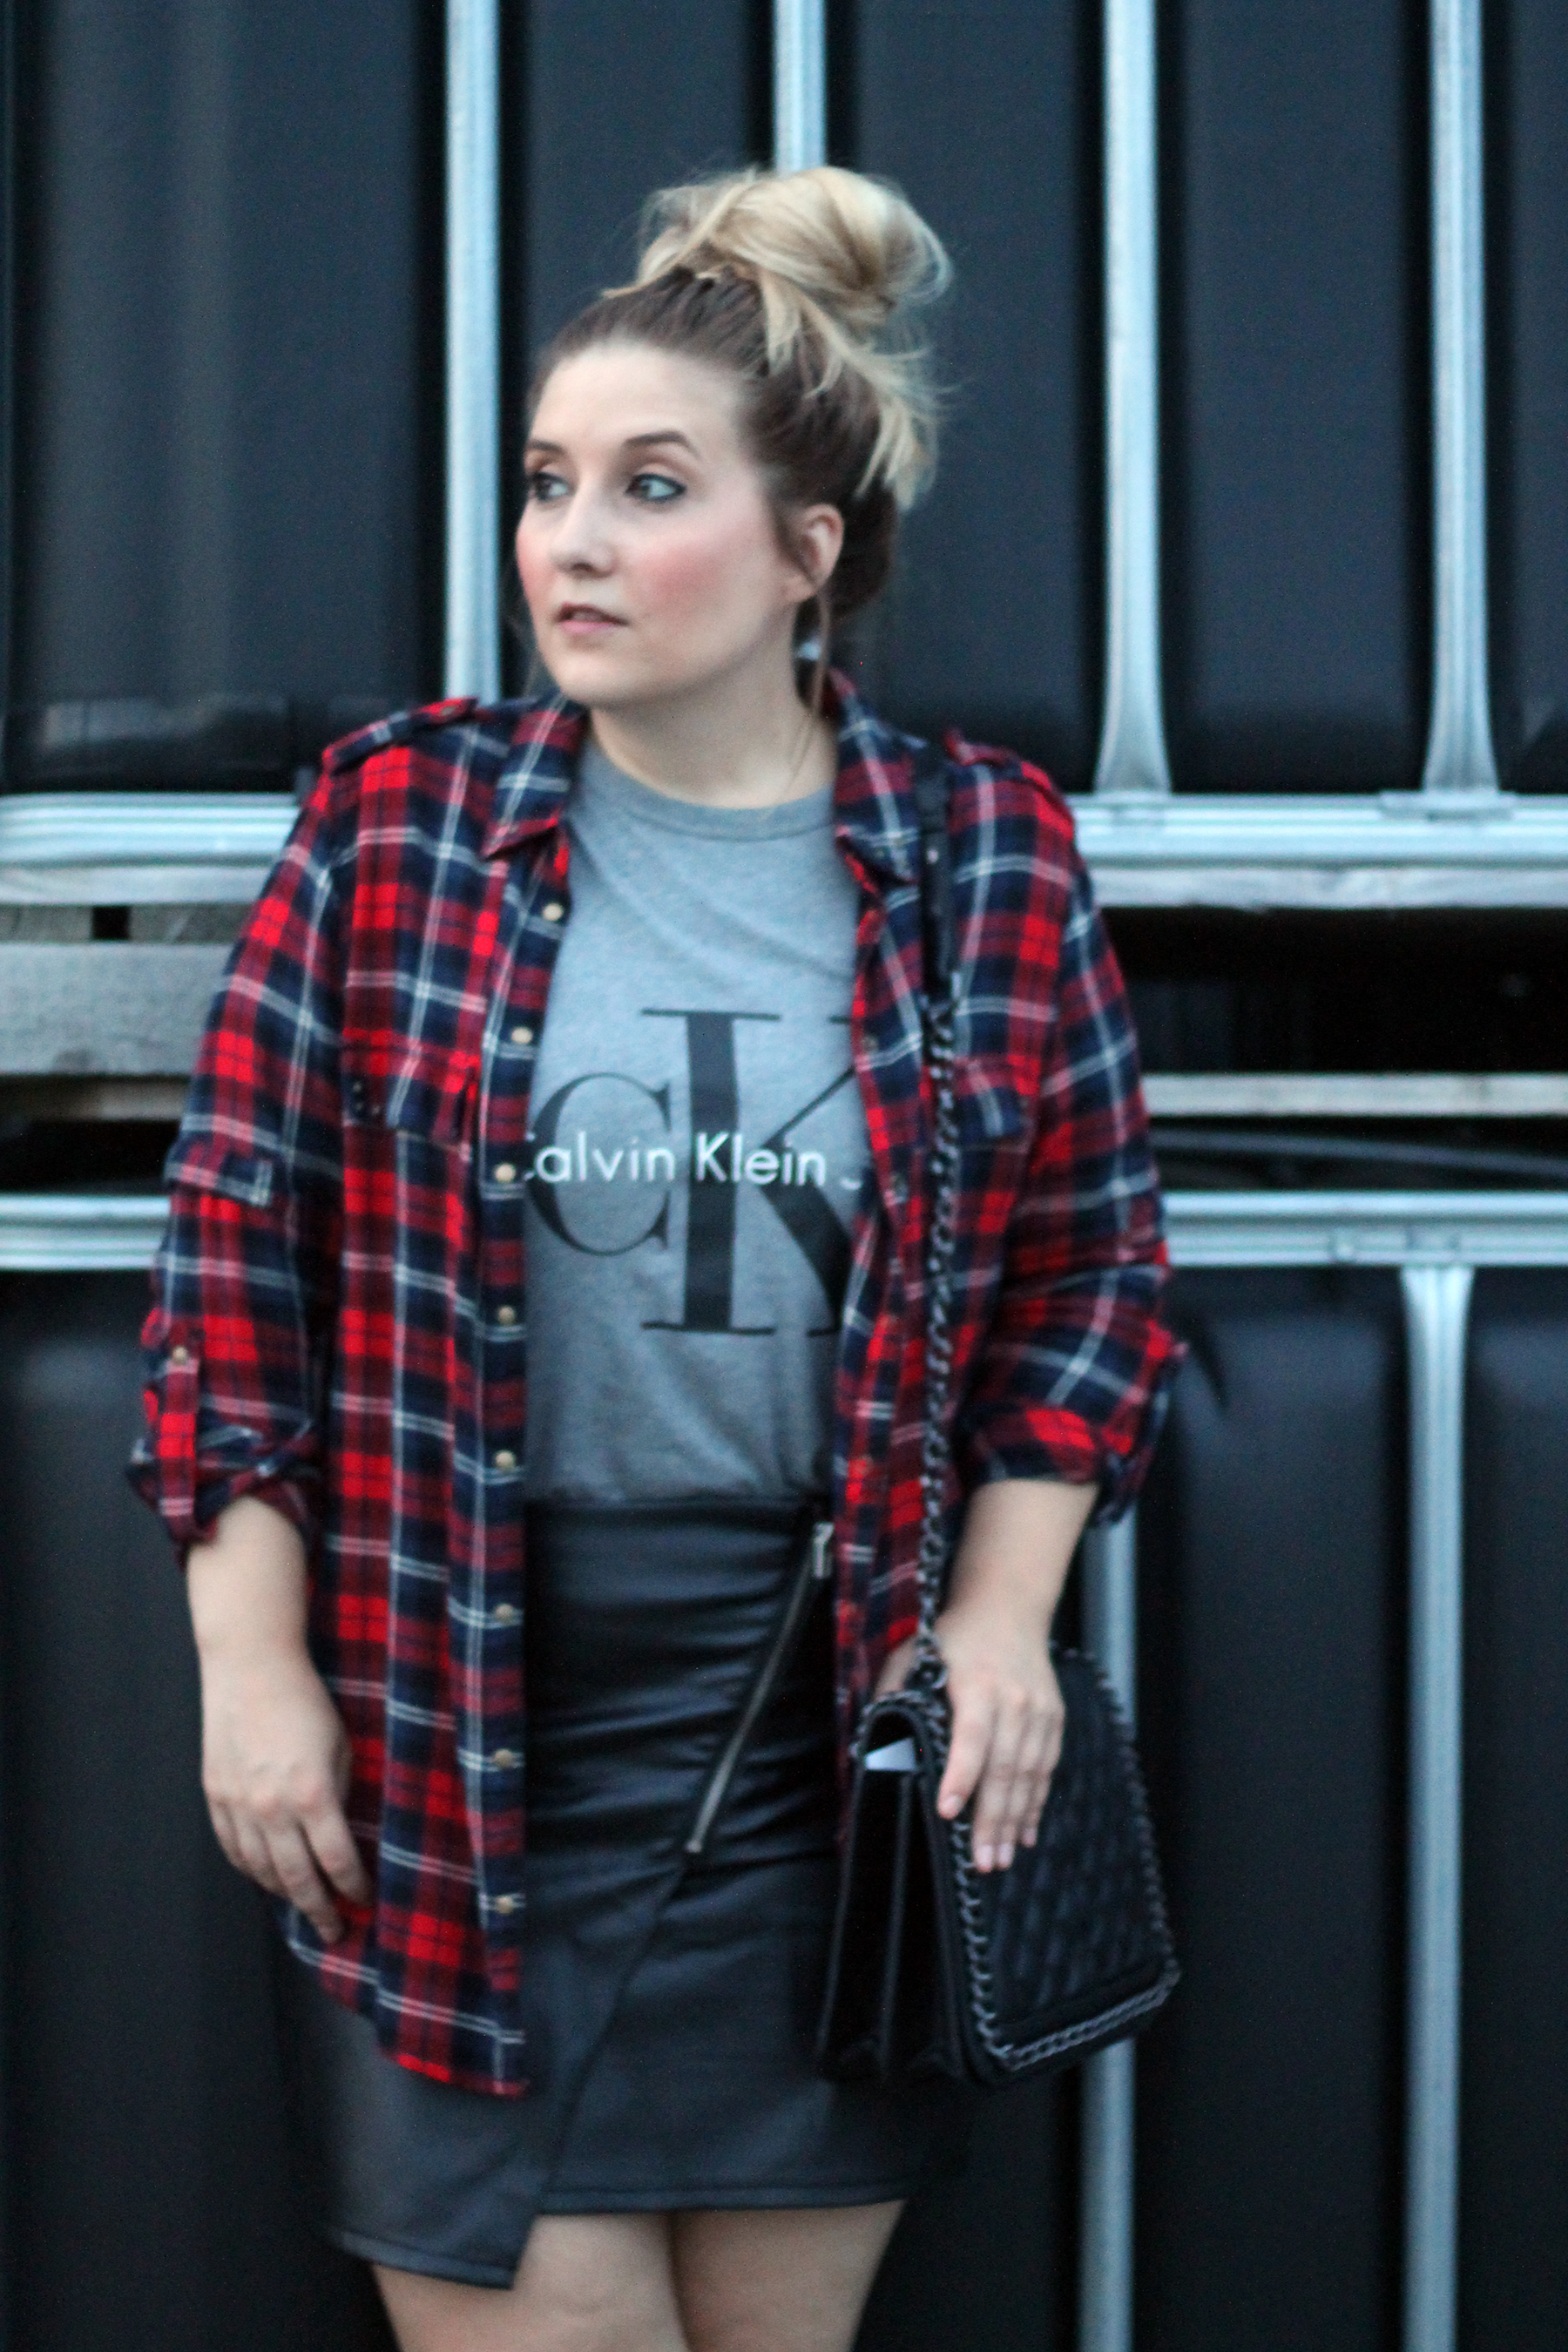 calvin-kleid-shirt-zalando-top-blogger-fashionblogger-modeblogger-outfit-look